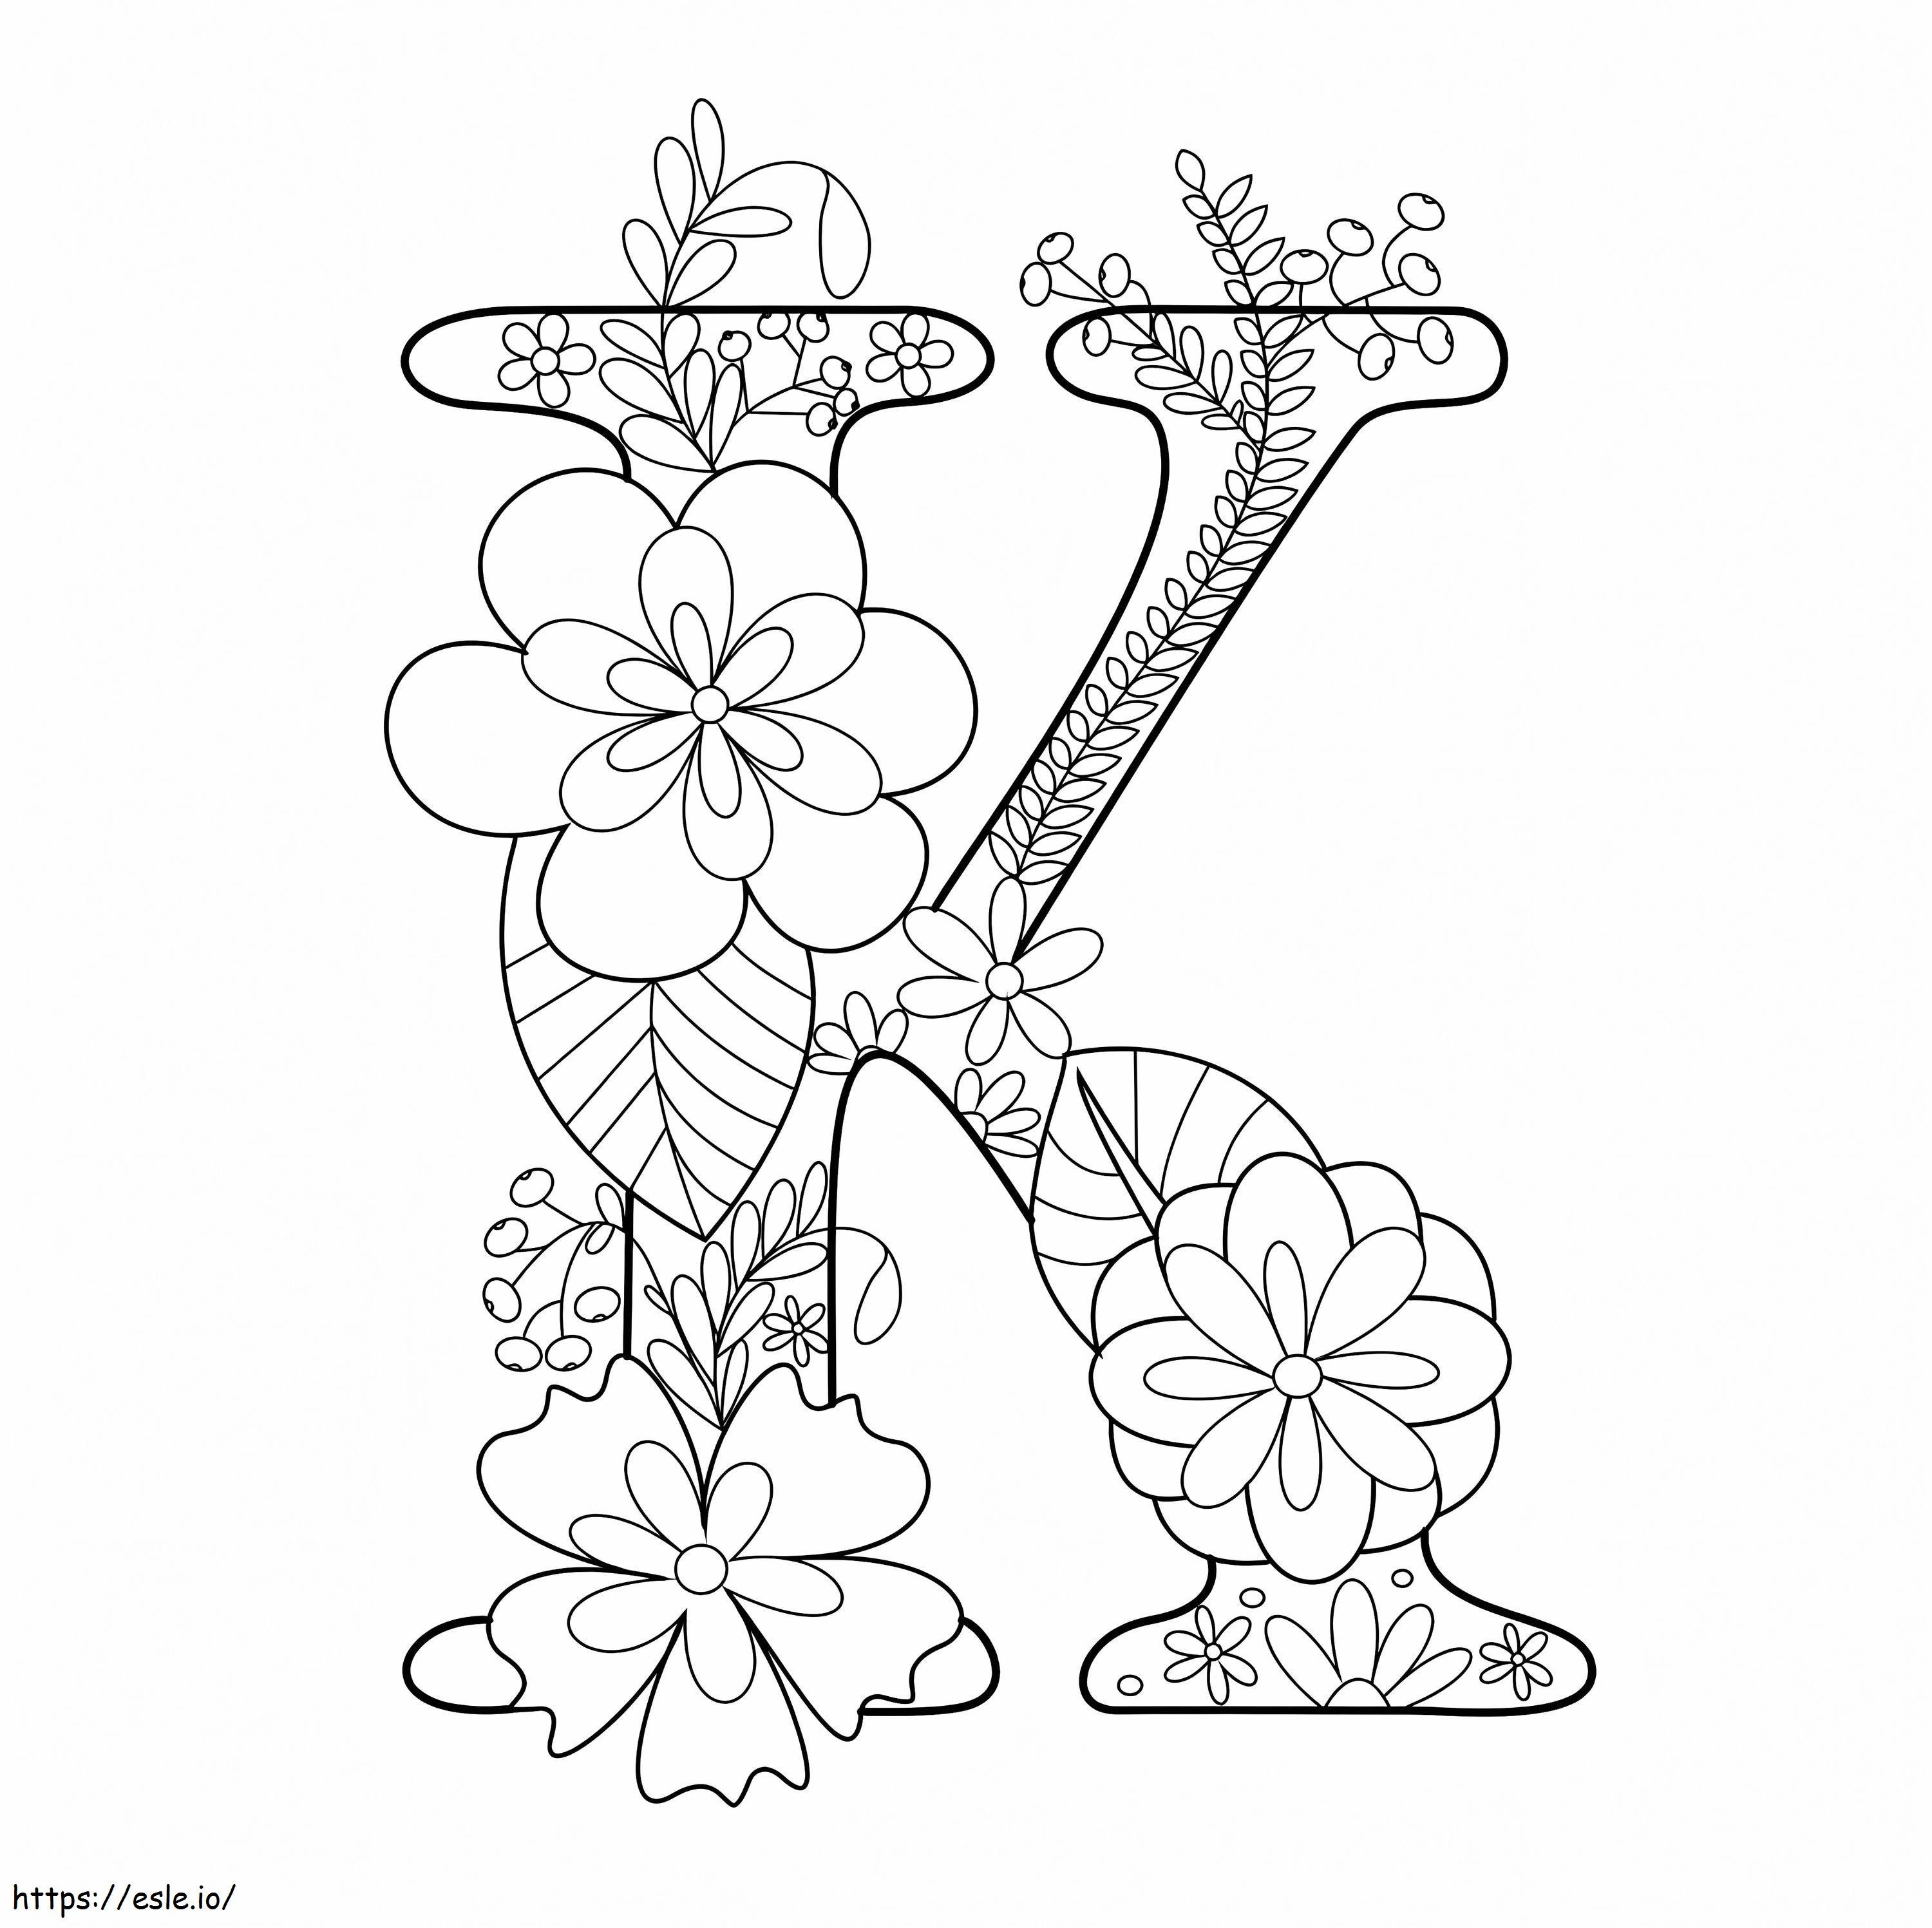 Buchstabe K mit Blume ausmalbilder